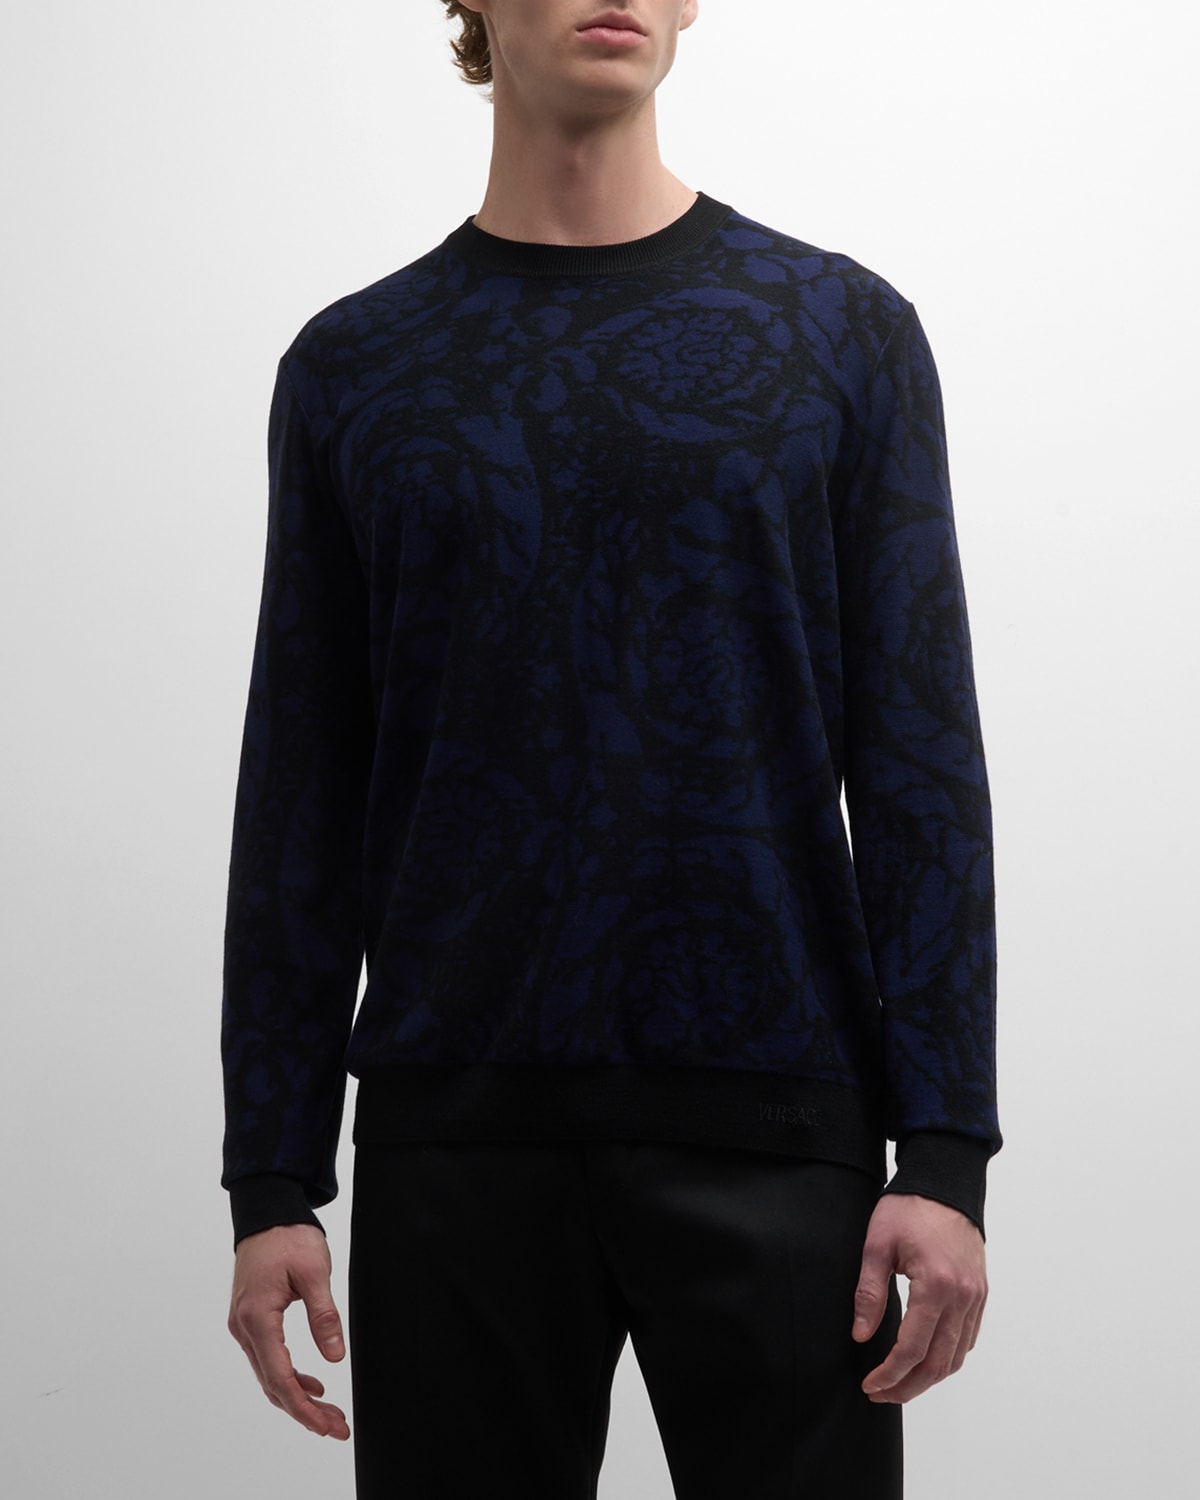 Versace Men's Vanise Barocco Sweater In Blacknavy